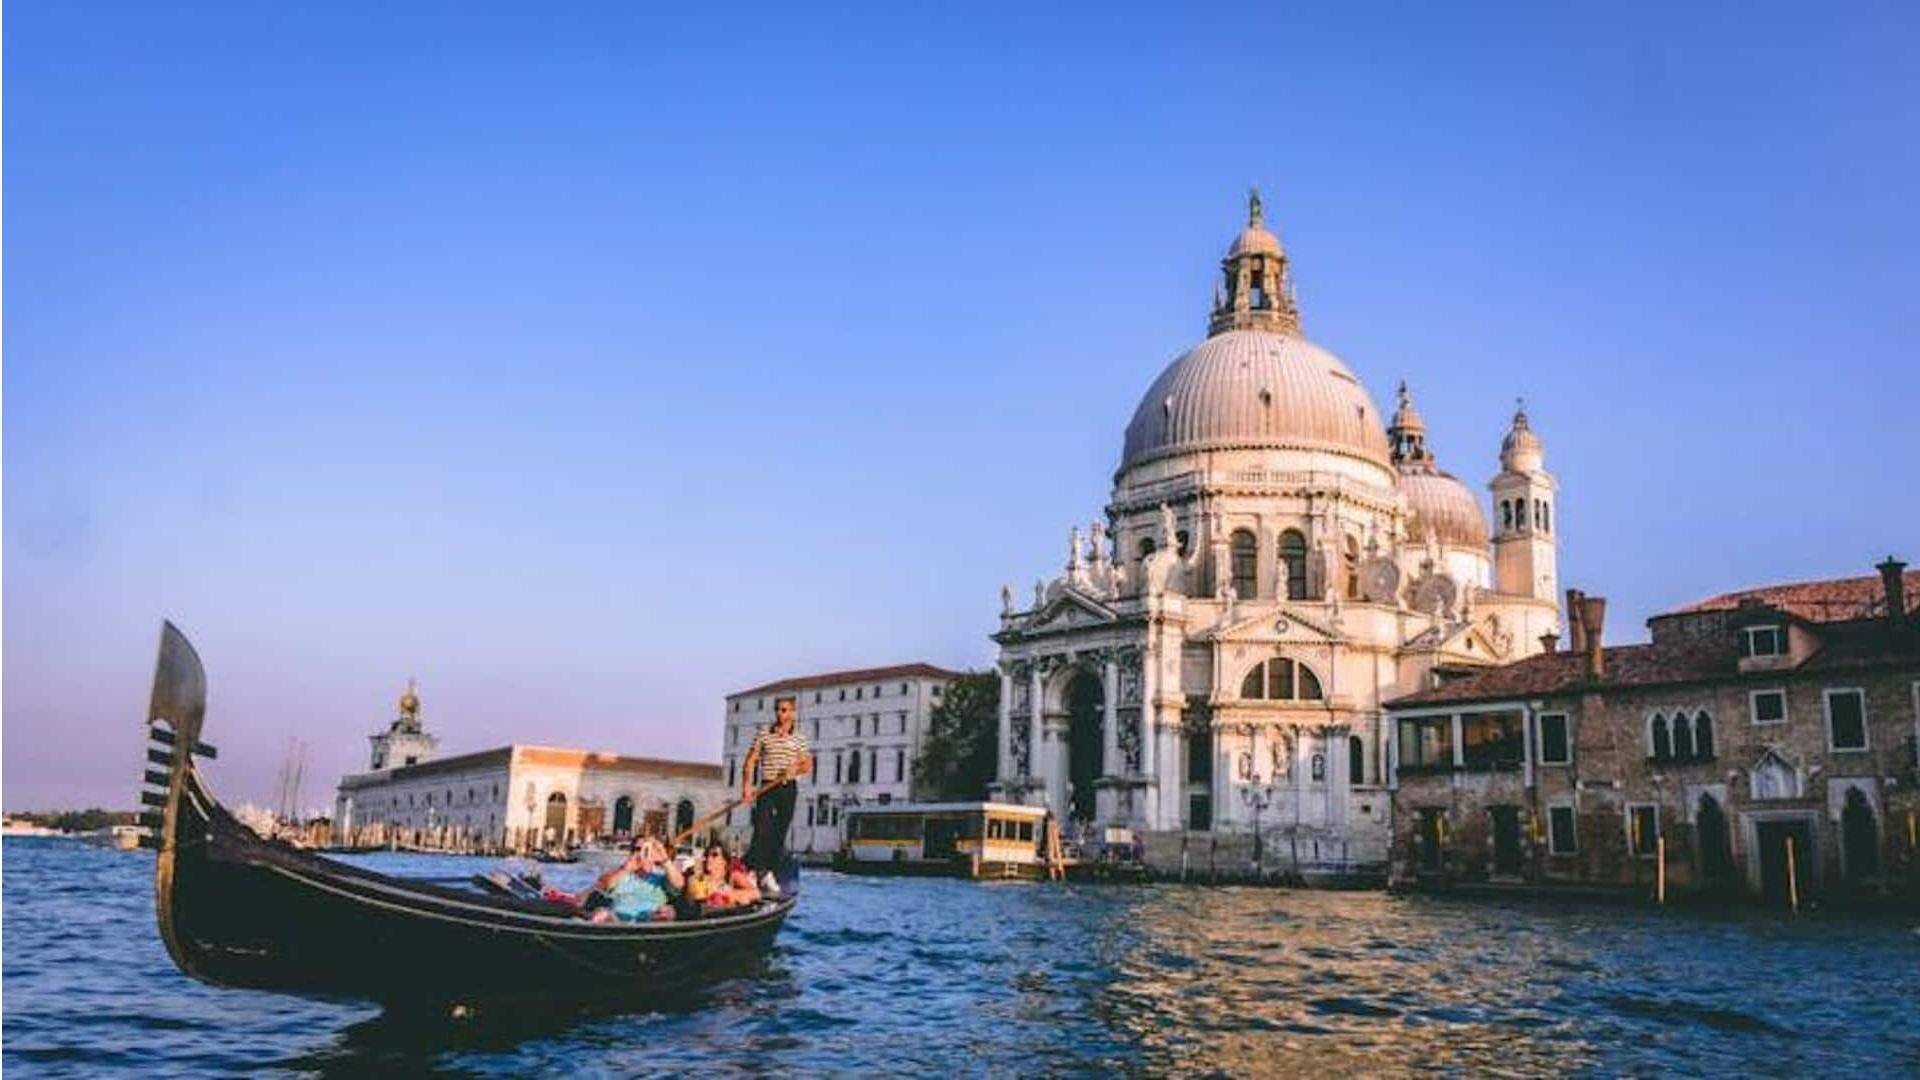 Nikmati keajaiban air yang unik di Venesia dengan panduan perjalanan ini